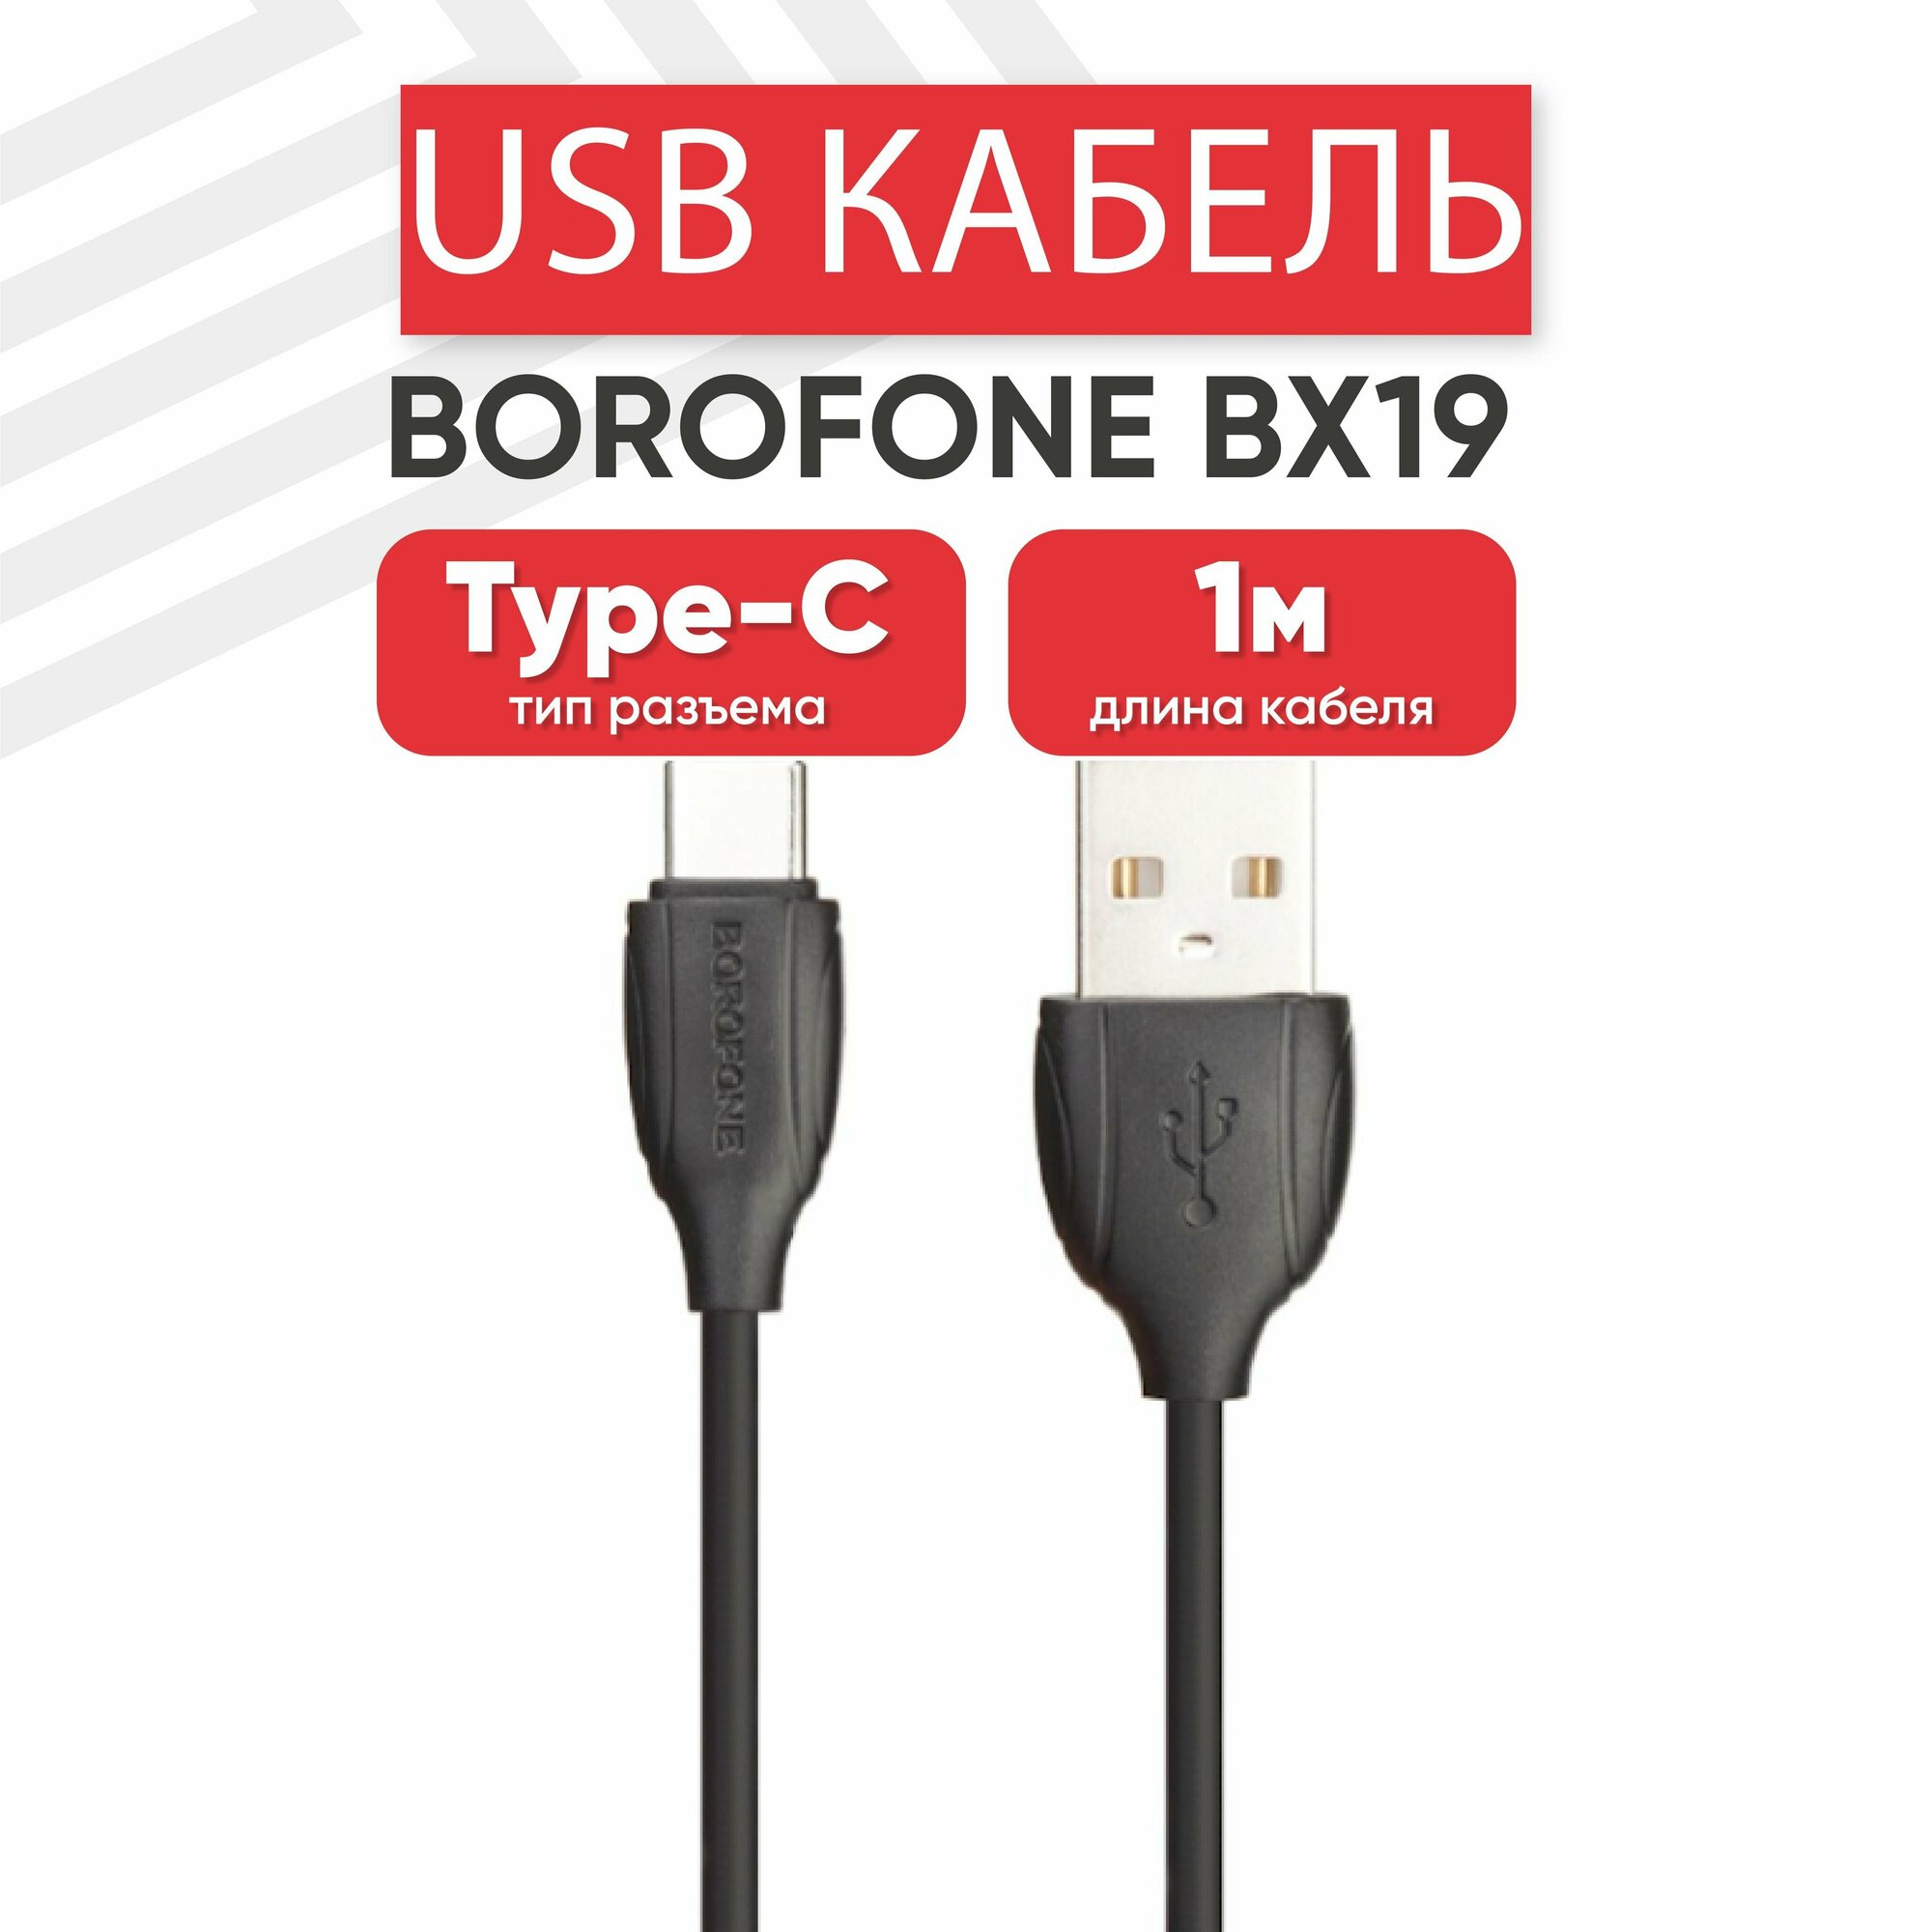 USB кабель Borofone BX19 для зарядки, передачи данных, Type-C, 3А, 1 метр, PVC, черный